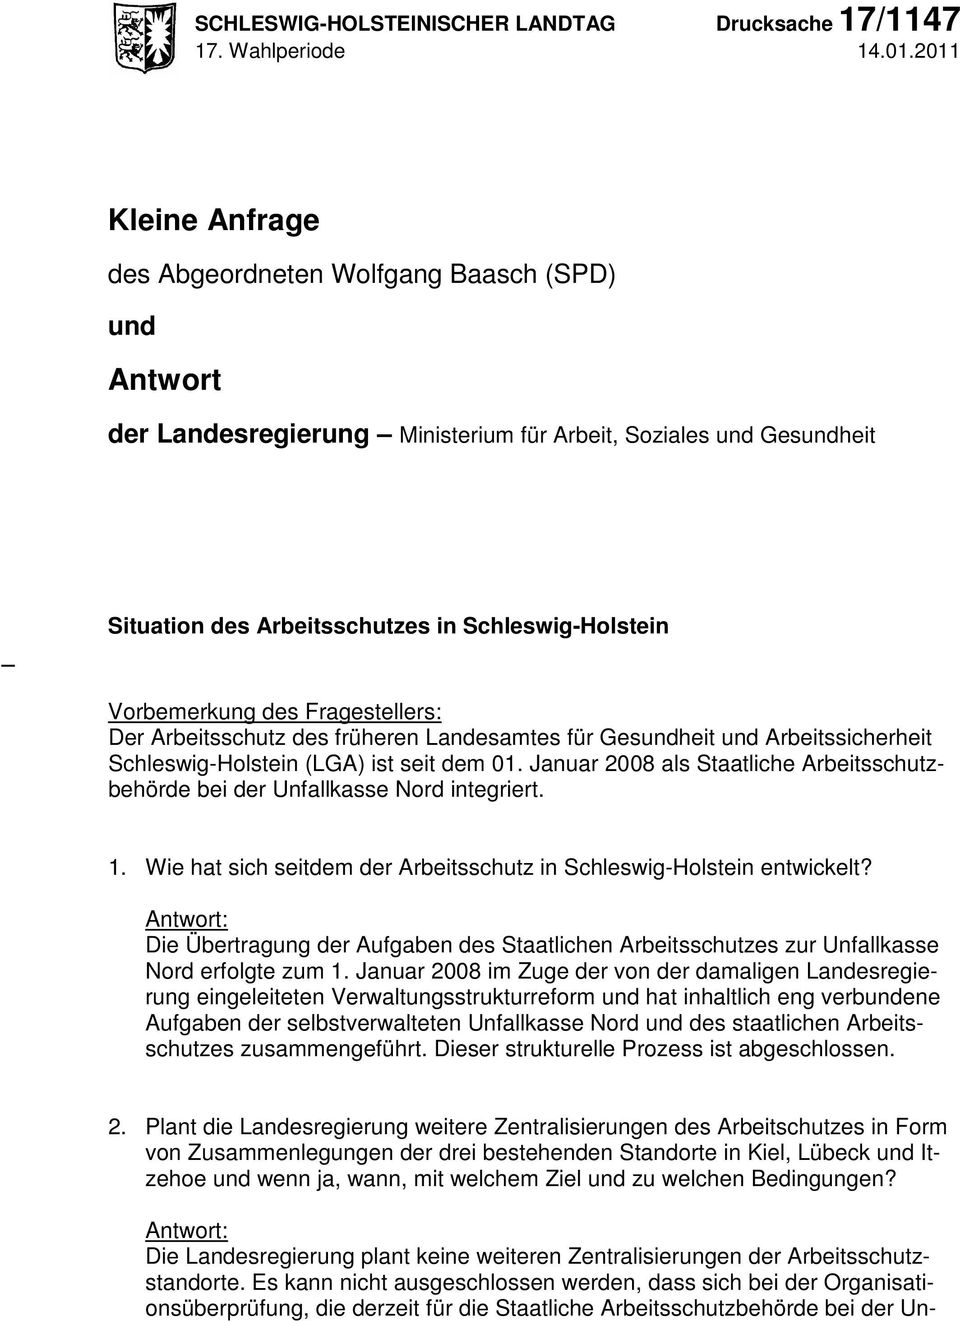 Vorbemerkung des Fragestellers: Der Arbeitsschutz des früheren Landesamtes für Gesundheit und Arbeitssicherheit Schleswig-Holstein (LGA) ist seit dem 01.